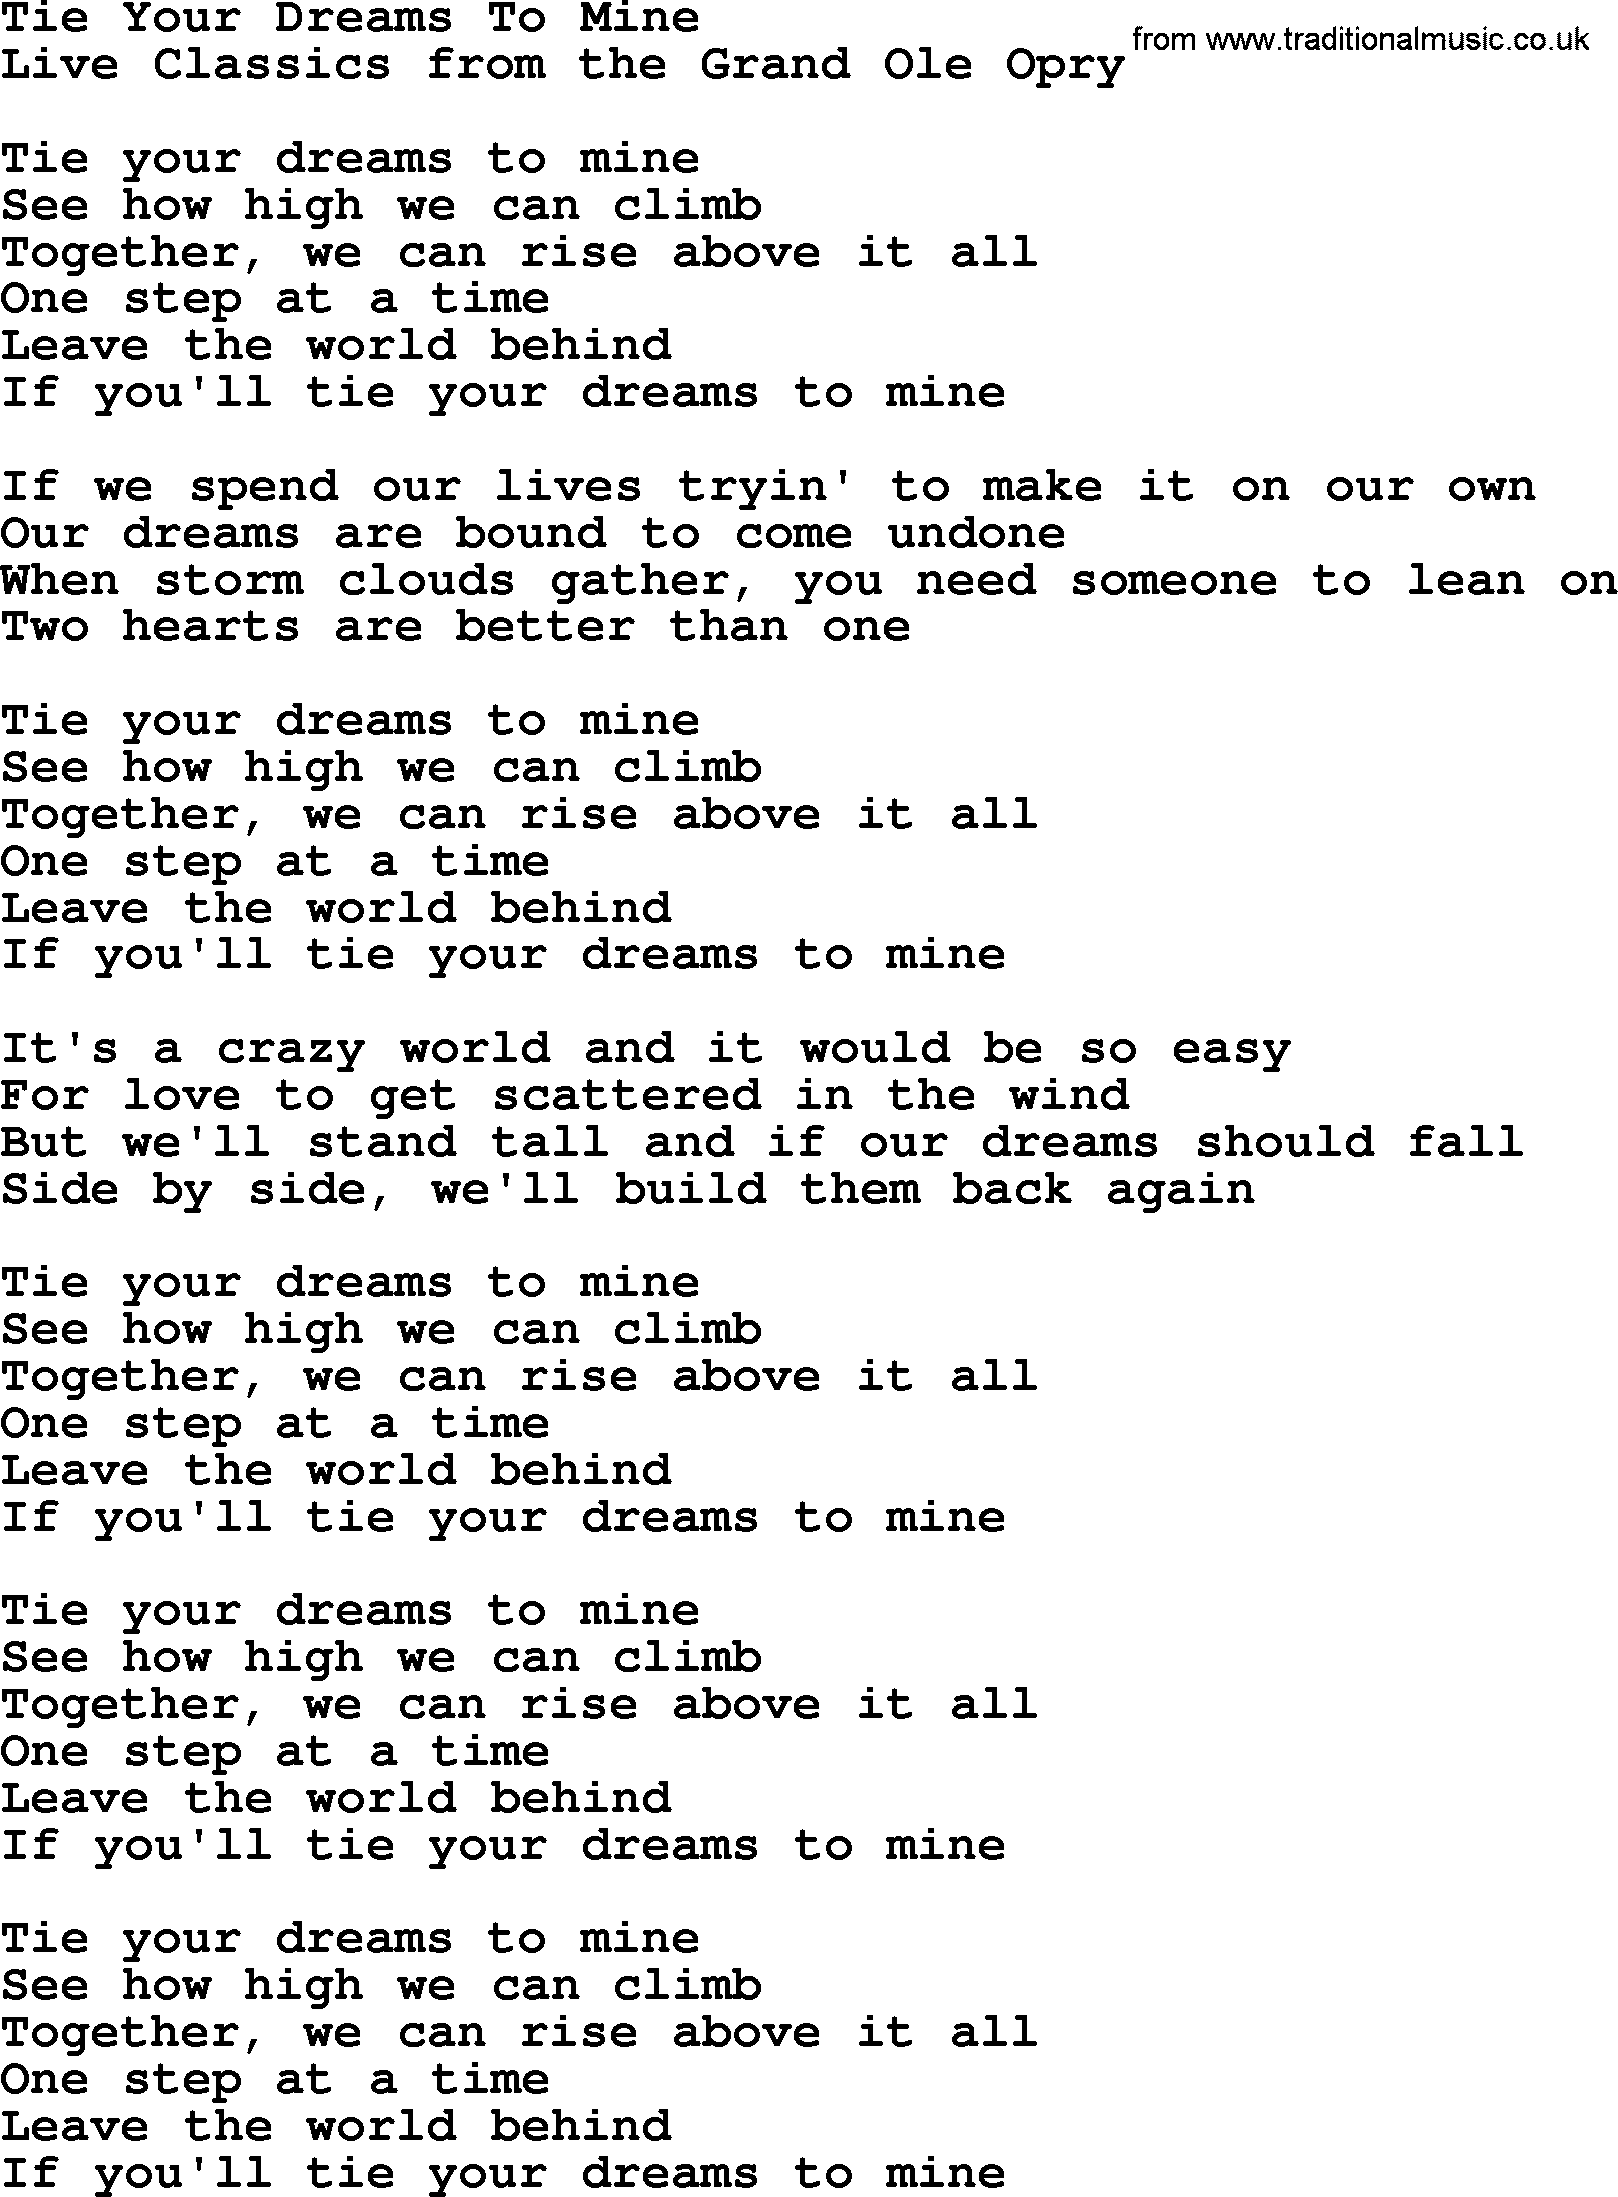 Marty Robbins song: Tie Your Dreams To Mine, lyrics